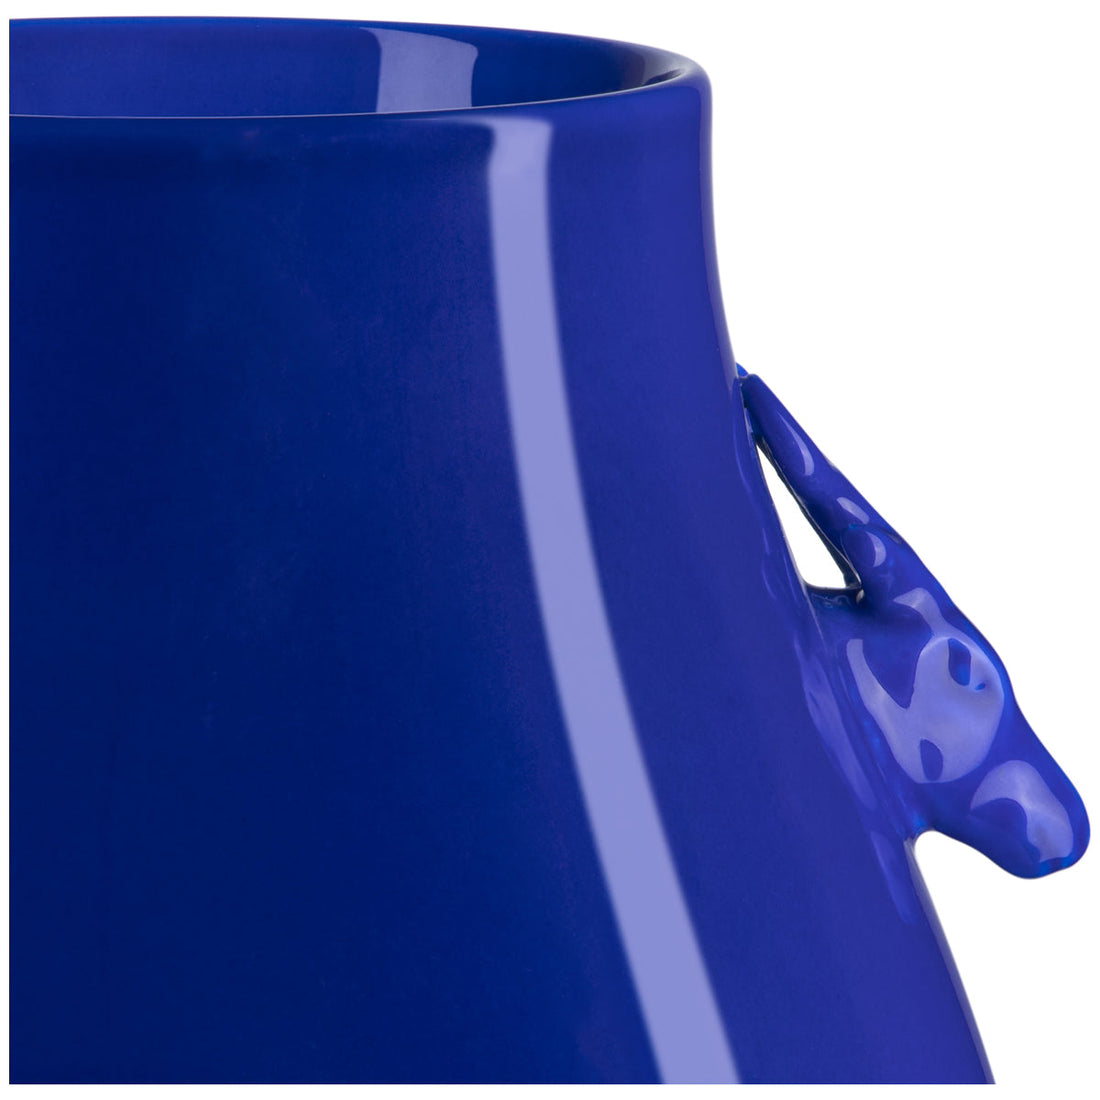 Currey and Company Ocean Blue Deer Ears Vase